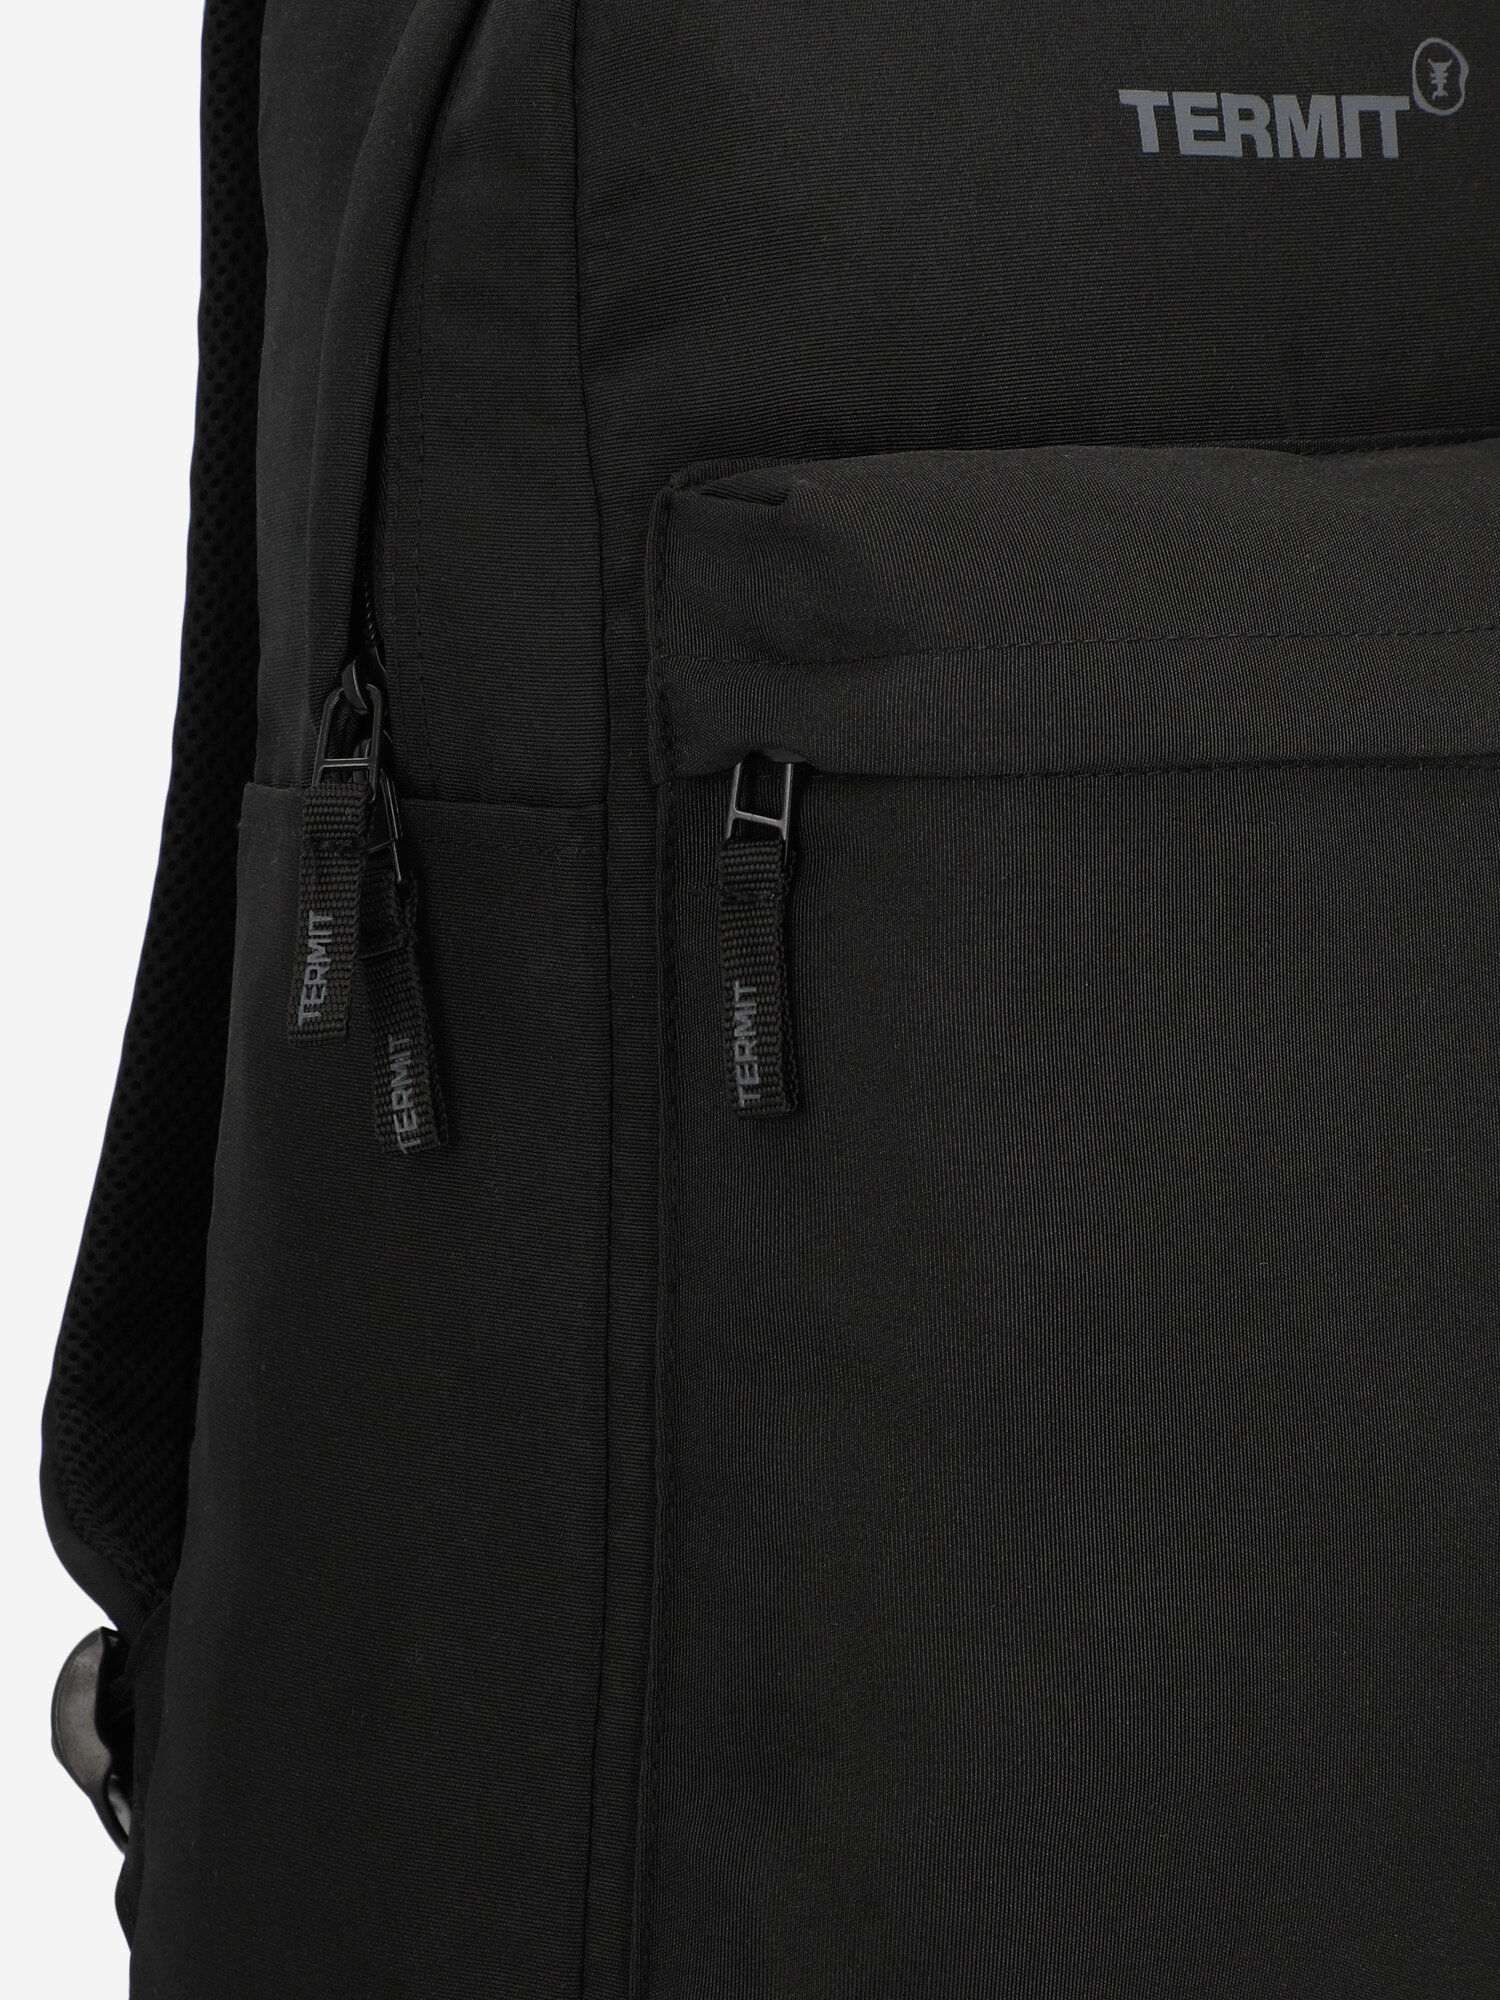 Рюкзак Termit Черный; RUS: Без размера, Ориг: one size